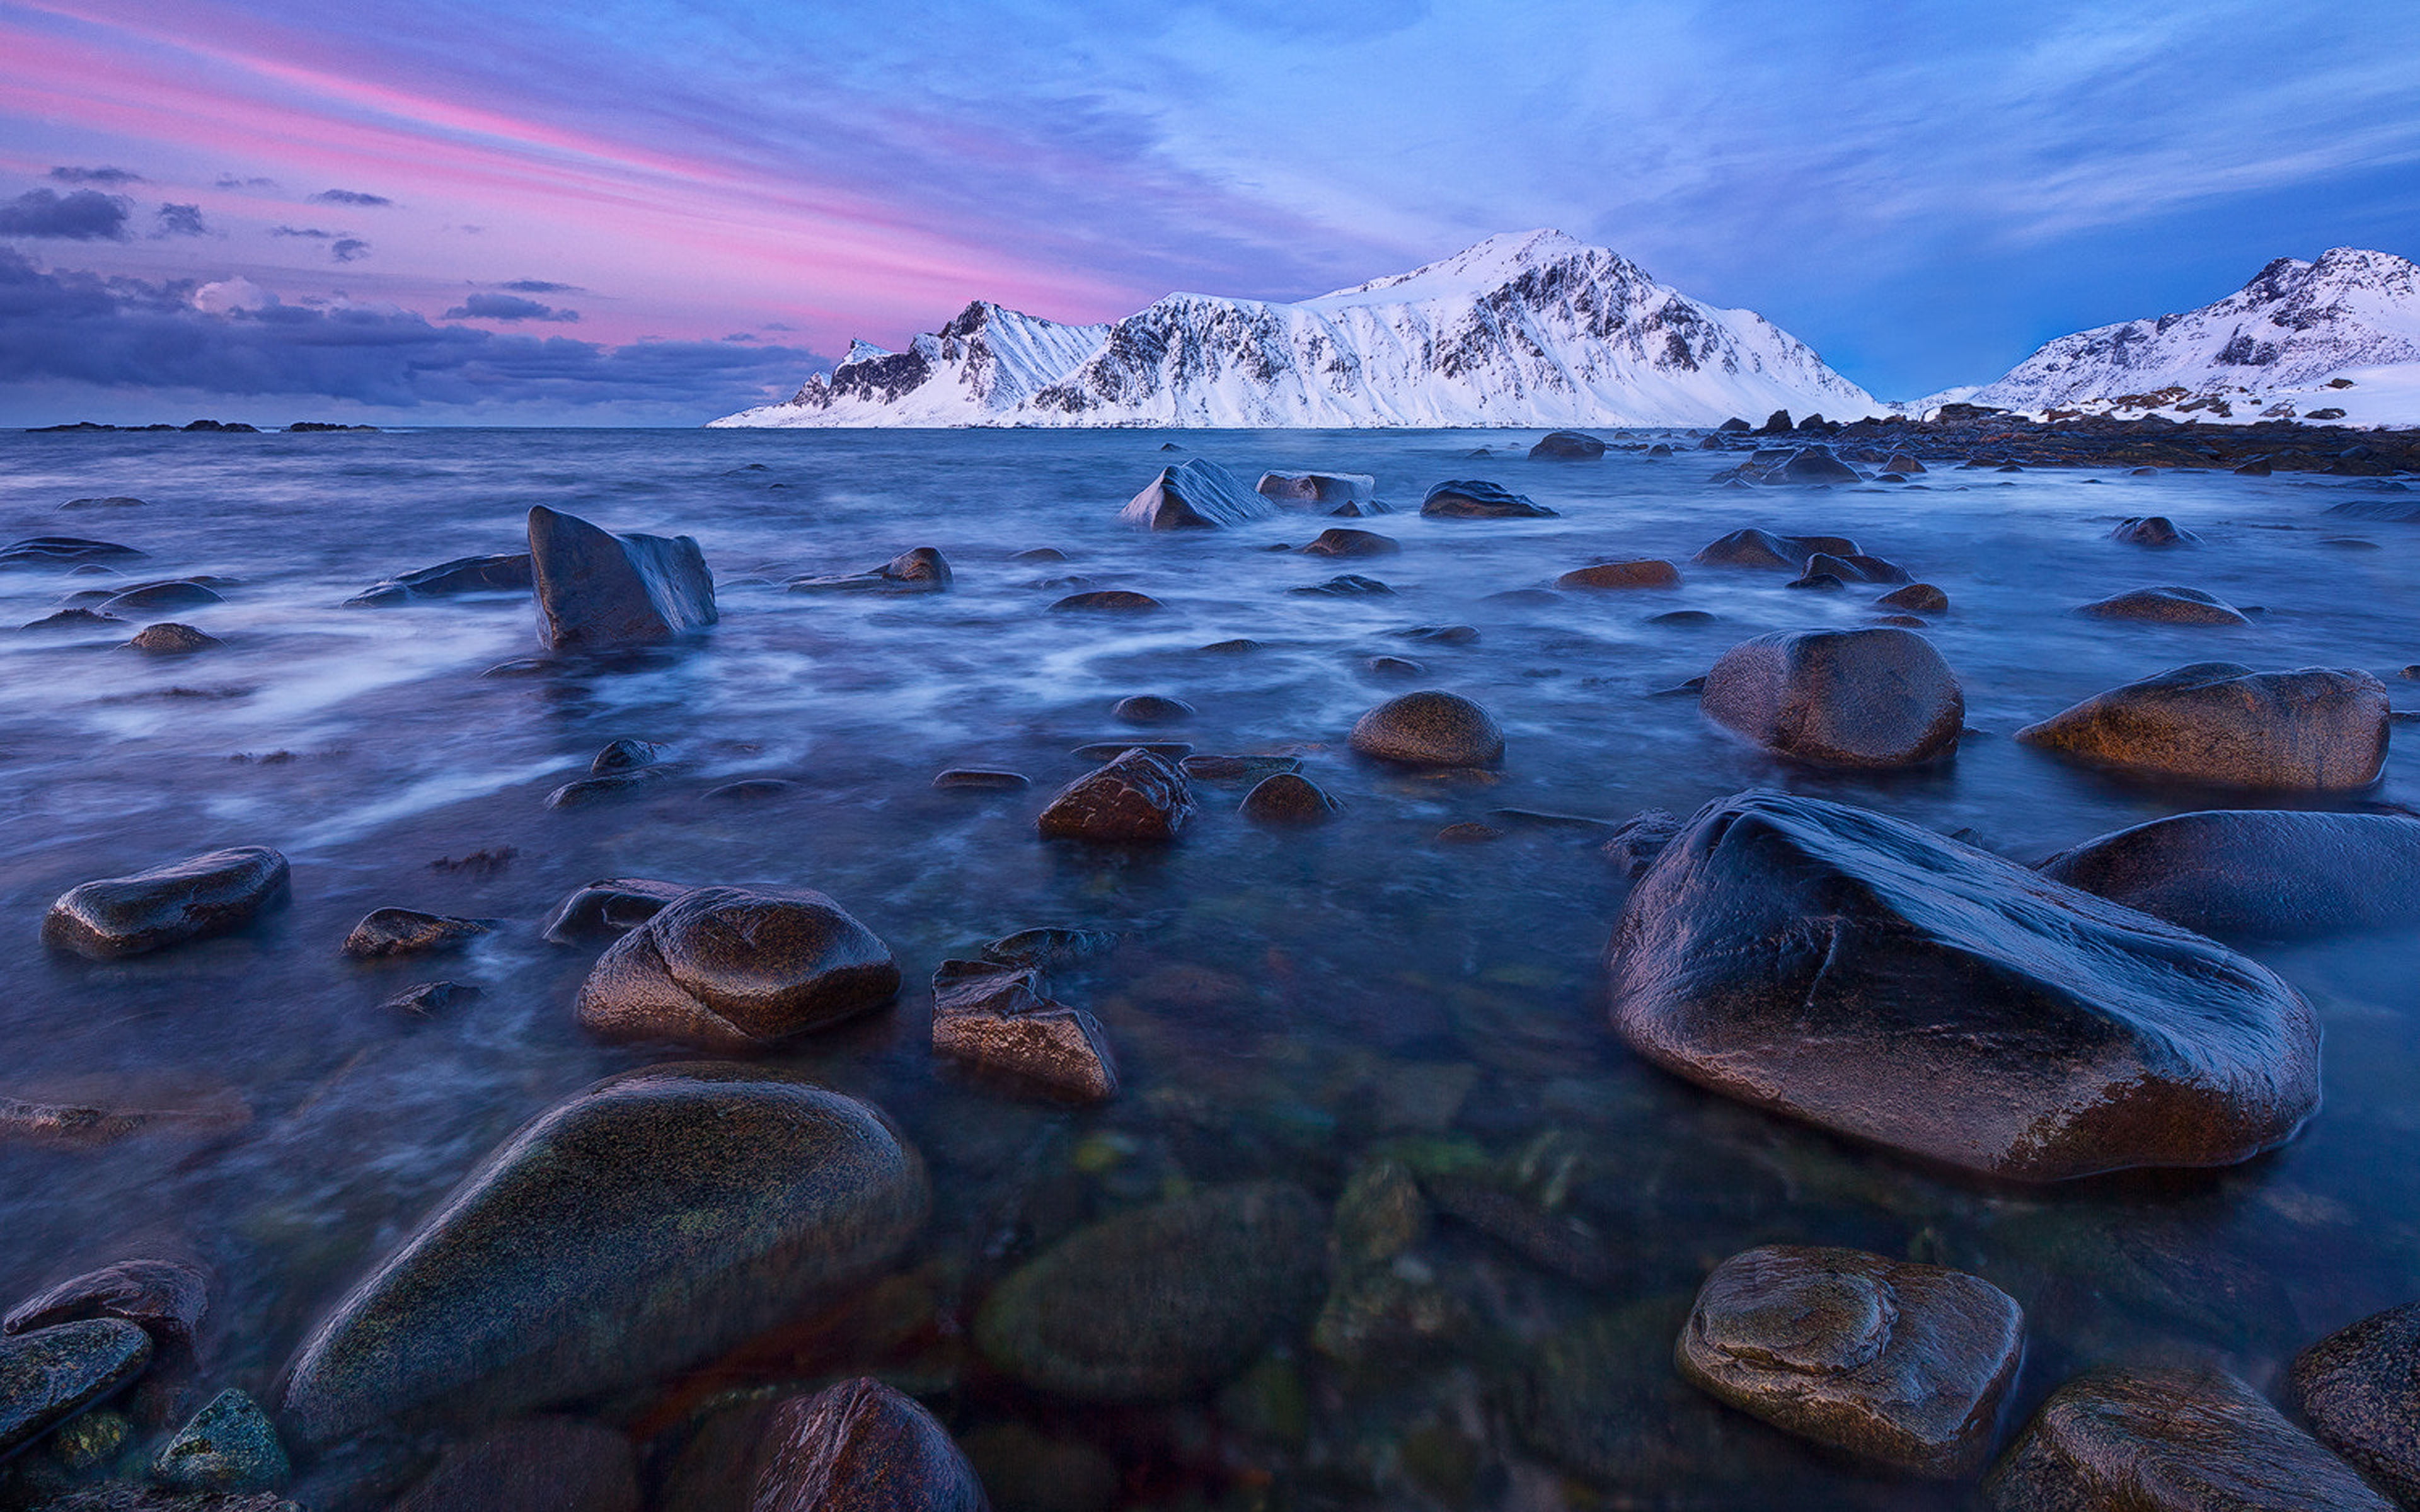 Barf Peak Lofoten Islands Norway Winter Landscape Ocean Rocks Snowy Pannin Desktop Hd Wallpaper For Pc Tablet And Mobile 3840×2400